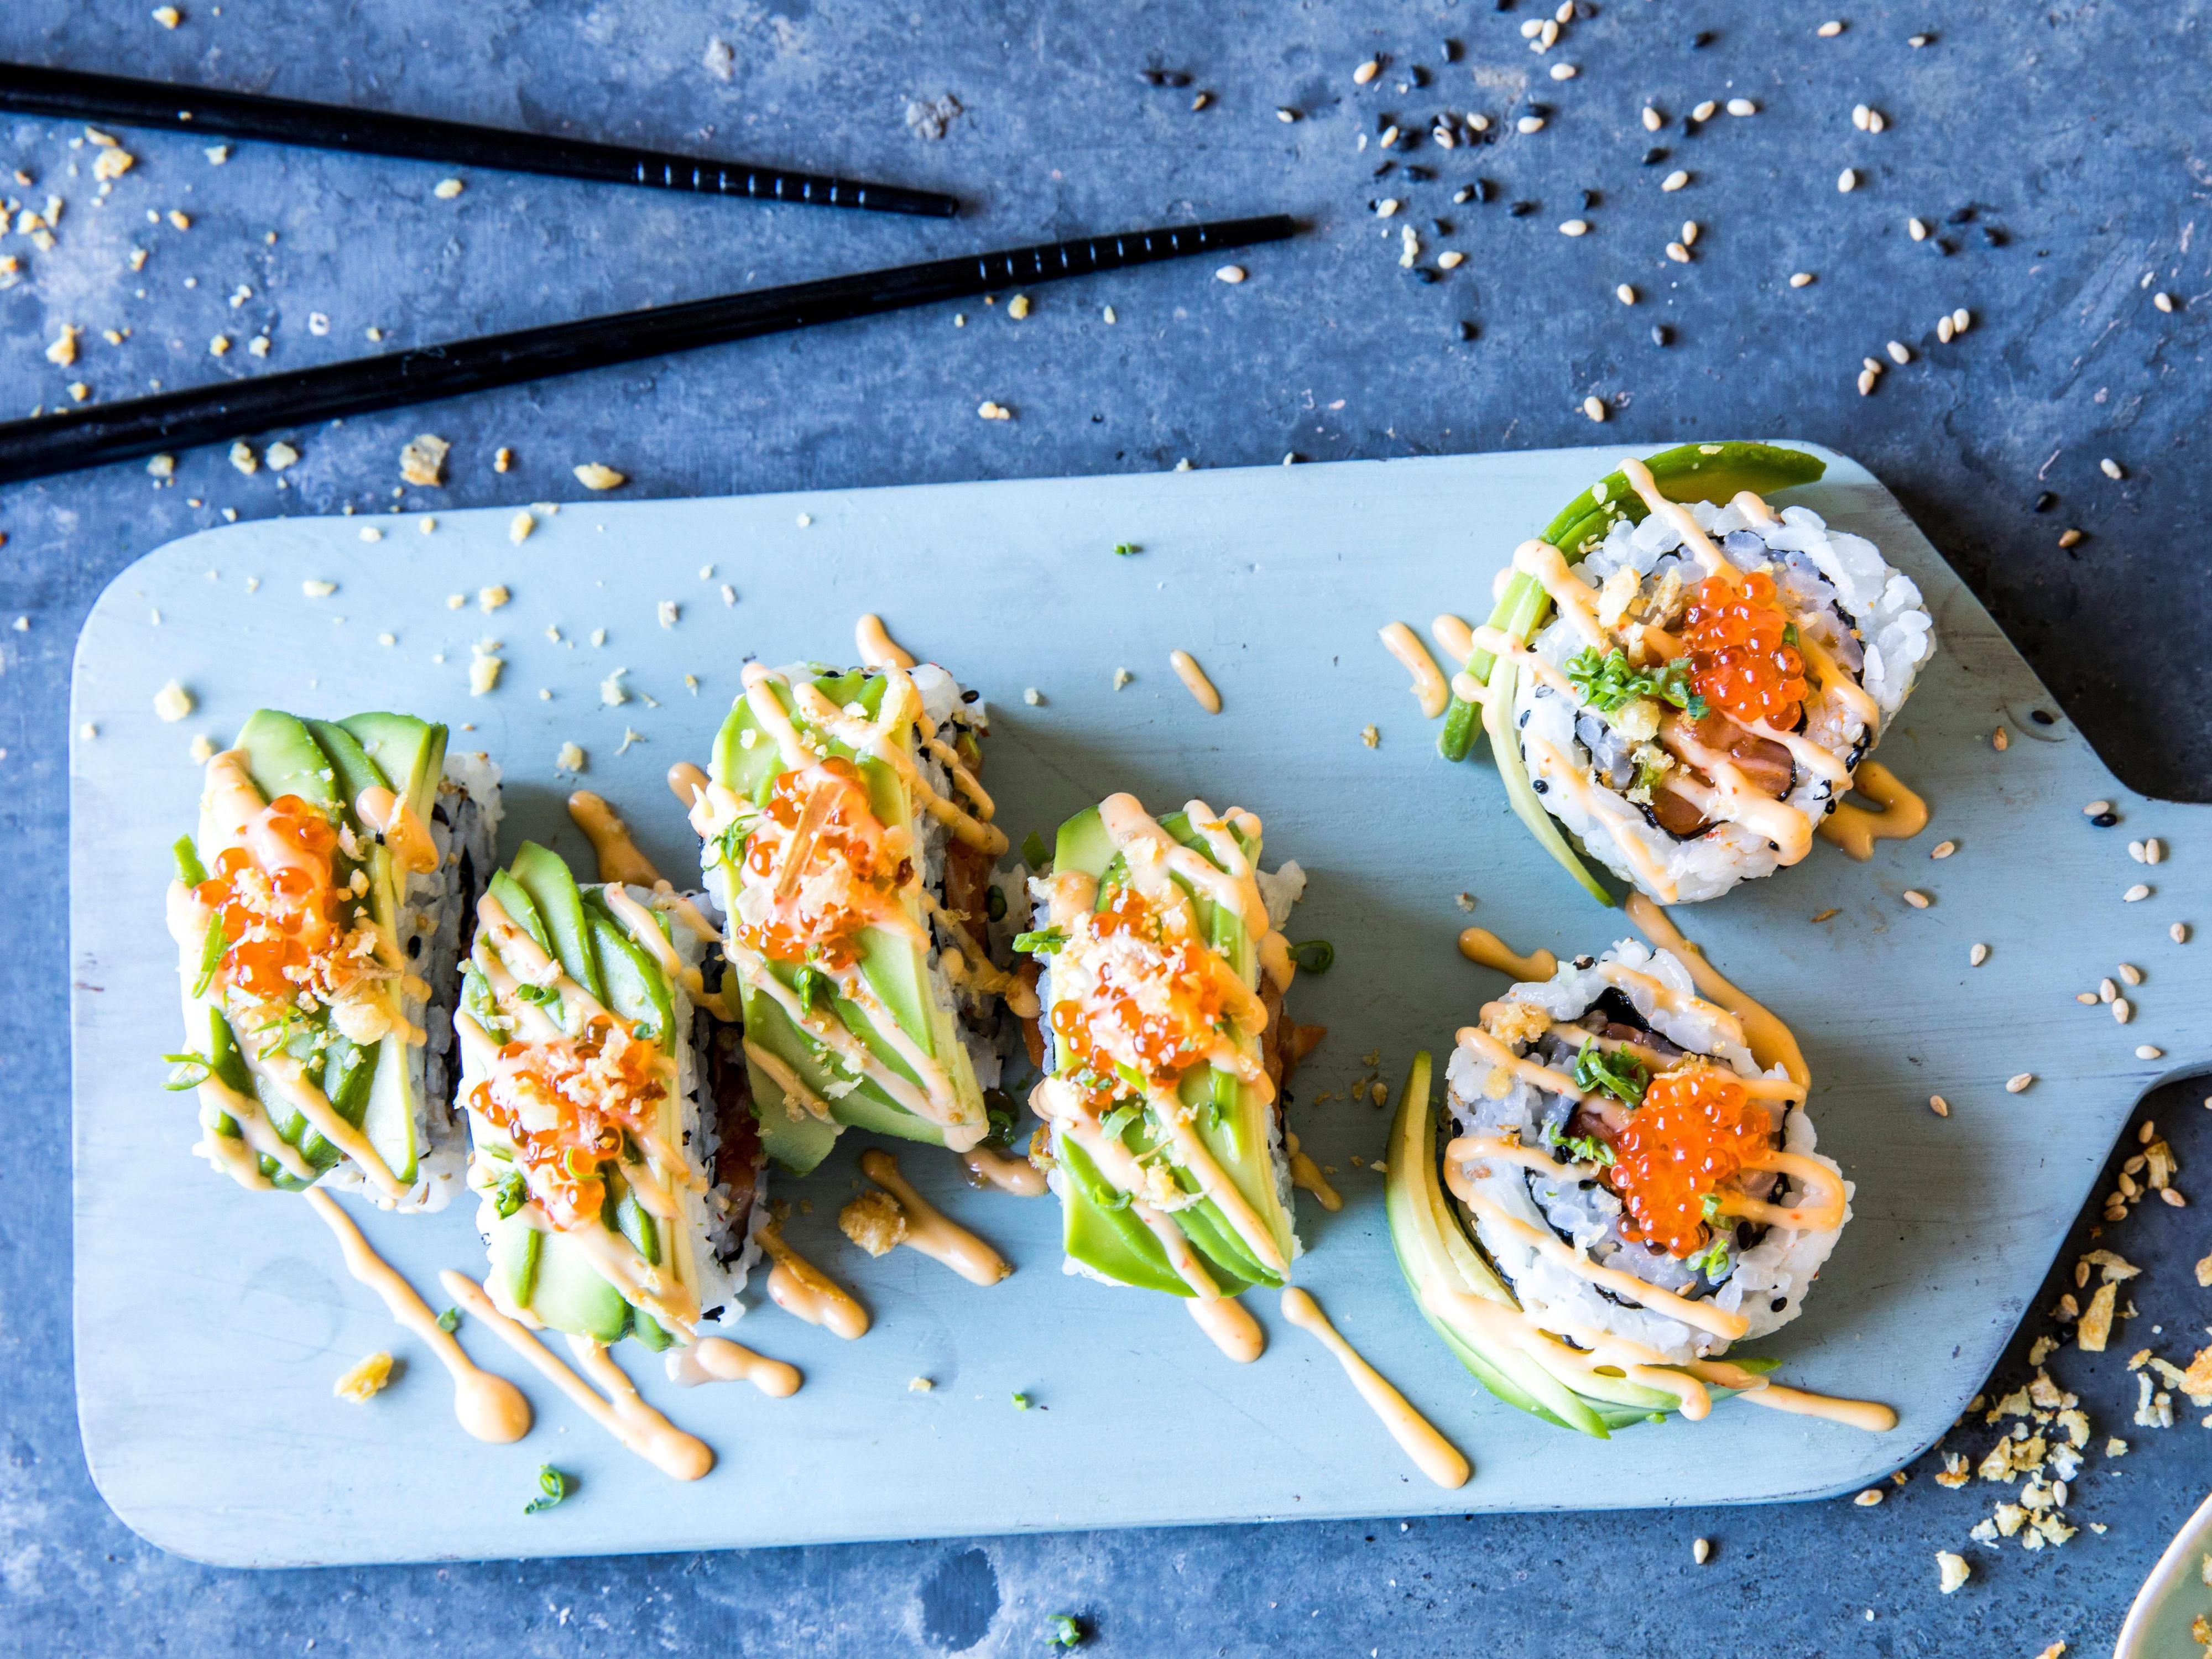 Maki sushi kan fylles med spicy laks eller hva du måtte ønske. Her har sushien fått et fancy utseende med avokado utenpå.